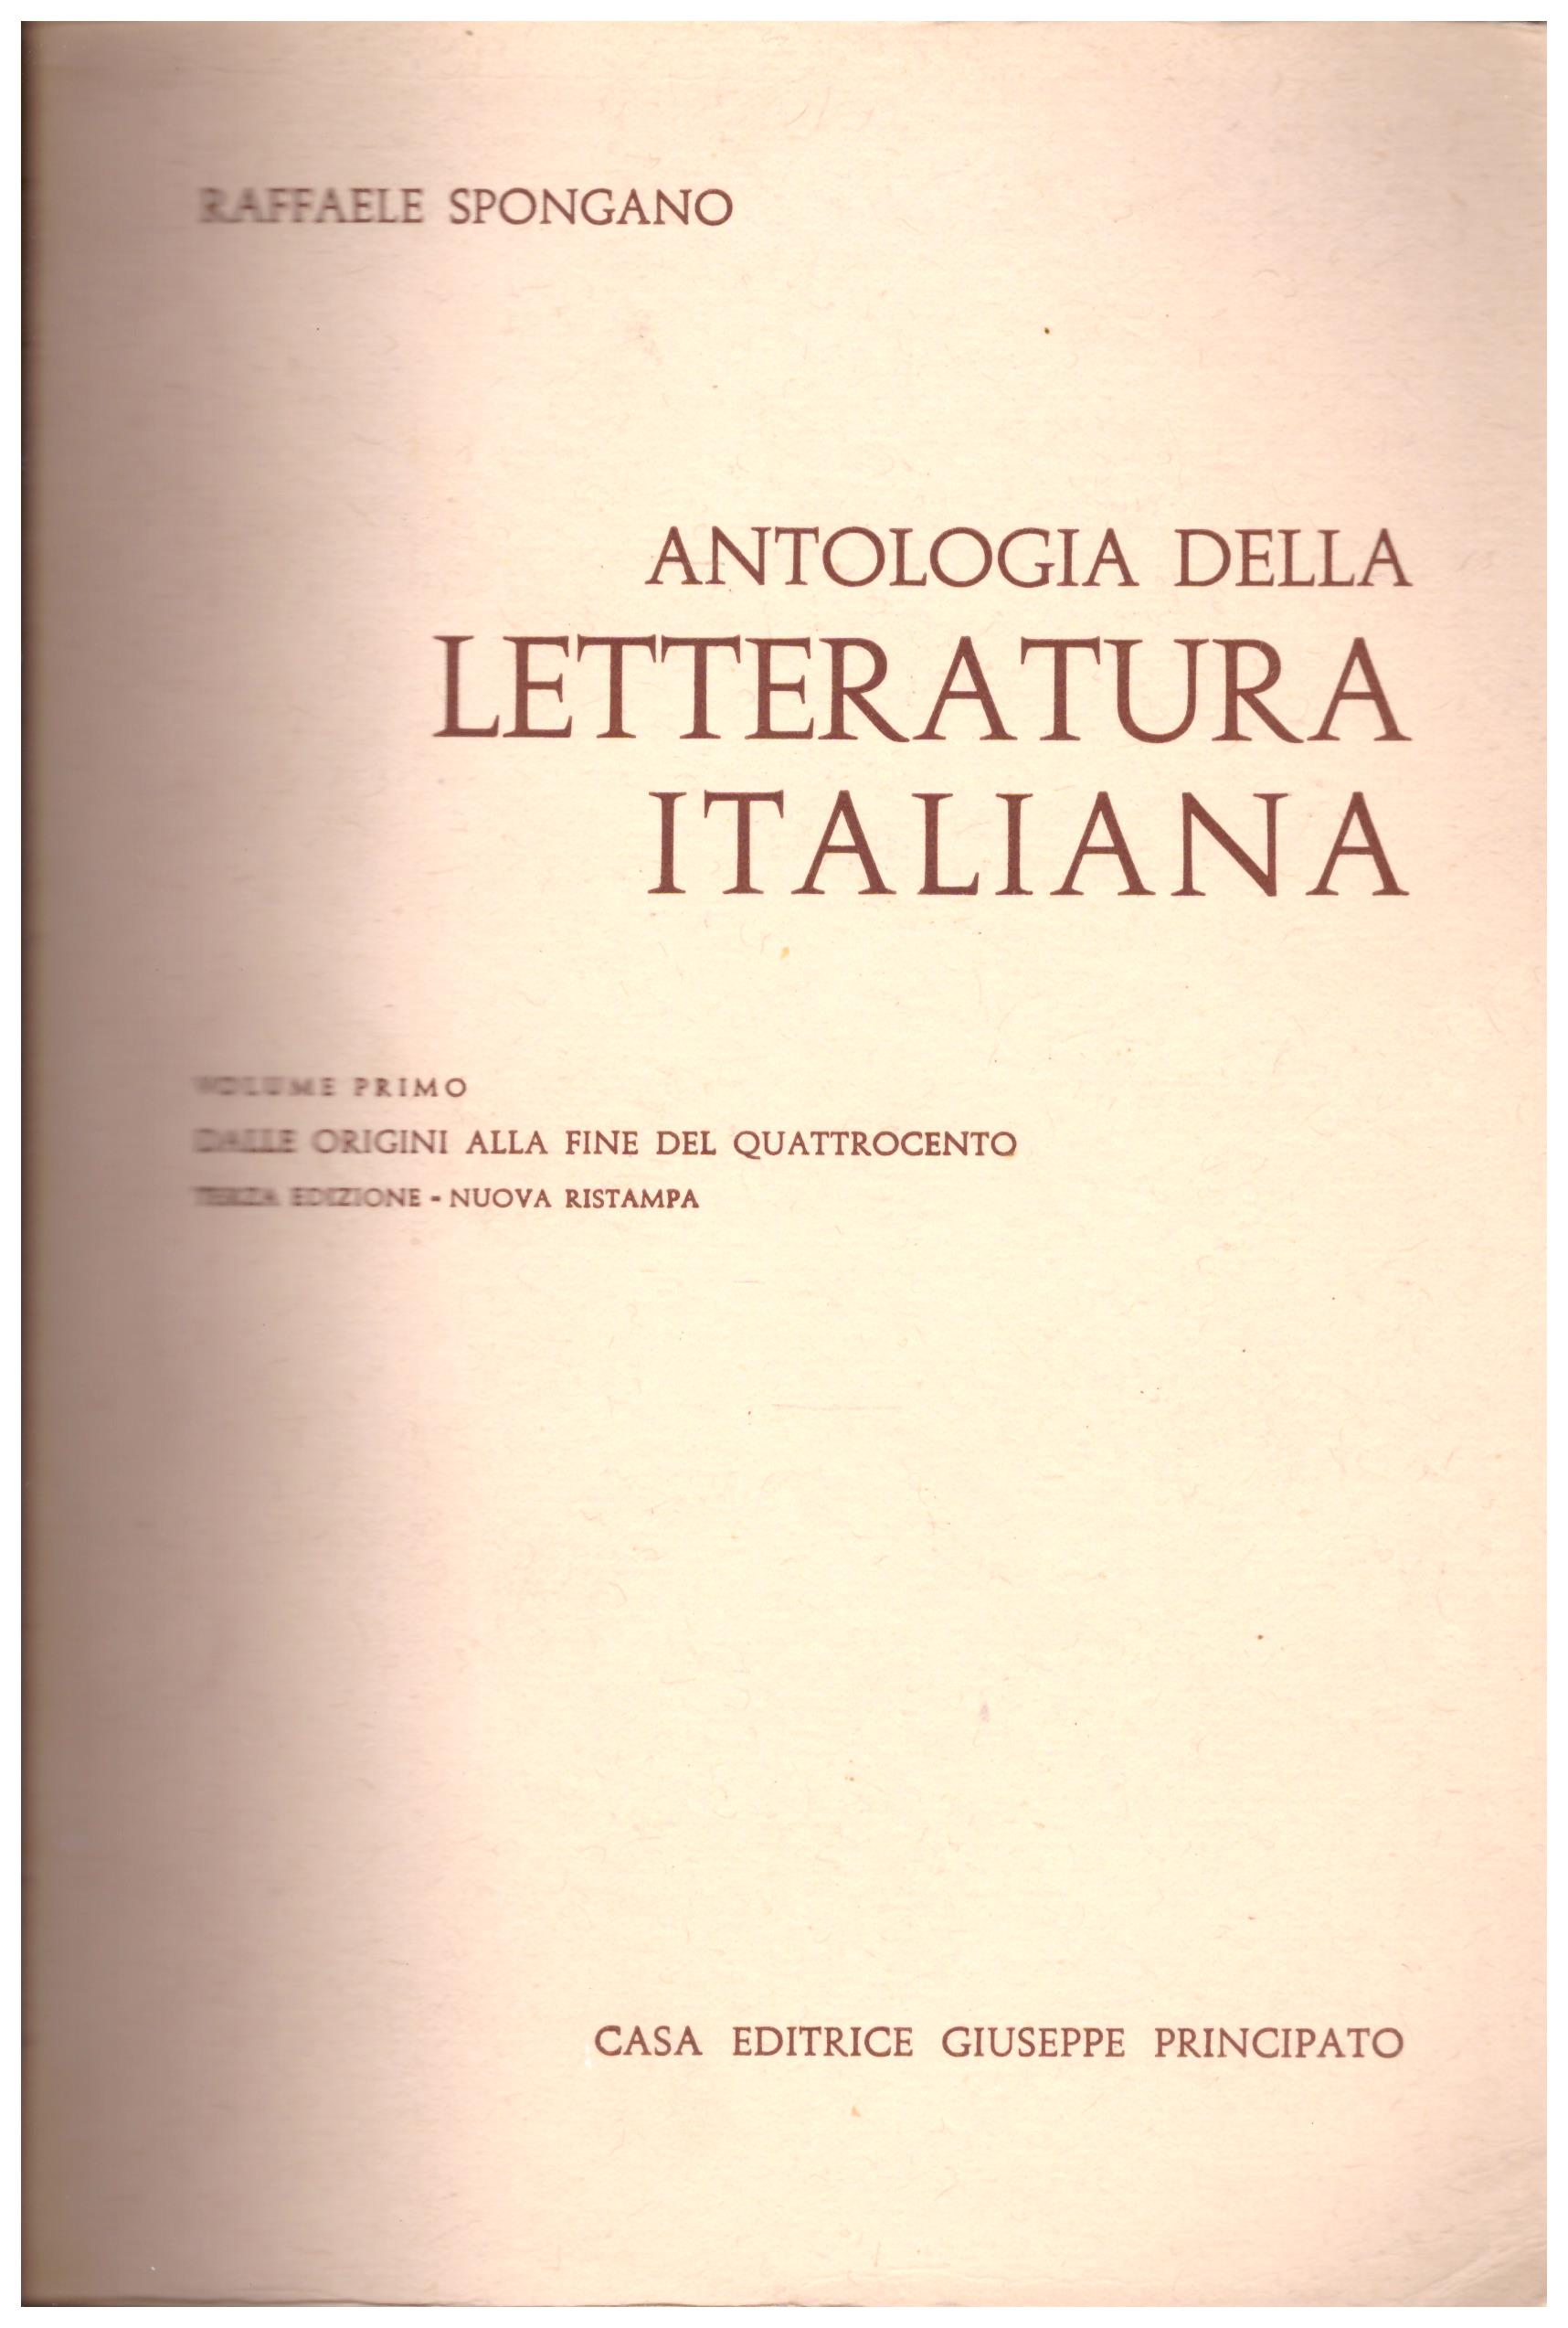 Titolo: Antologia della letteratura italiana vol 1  autore: Raffaele Spongano  editore: casa editrice giuseppe principato 1947